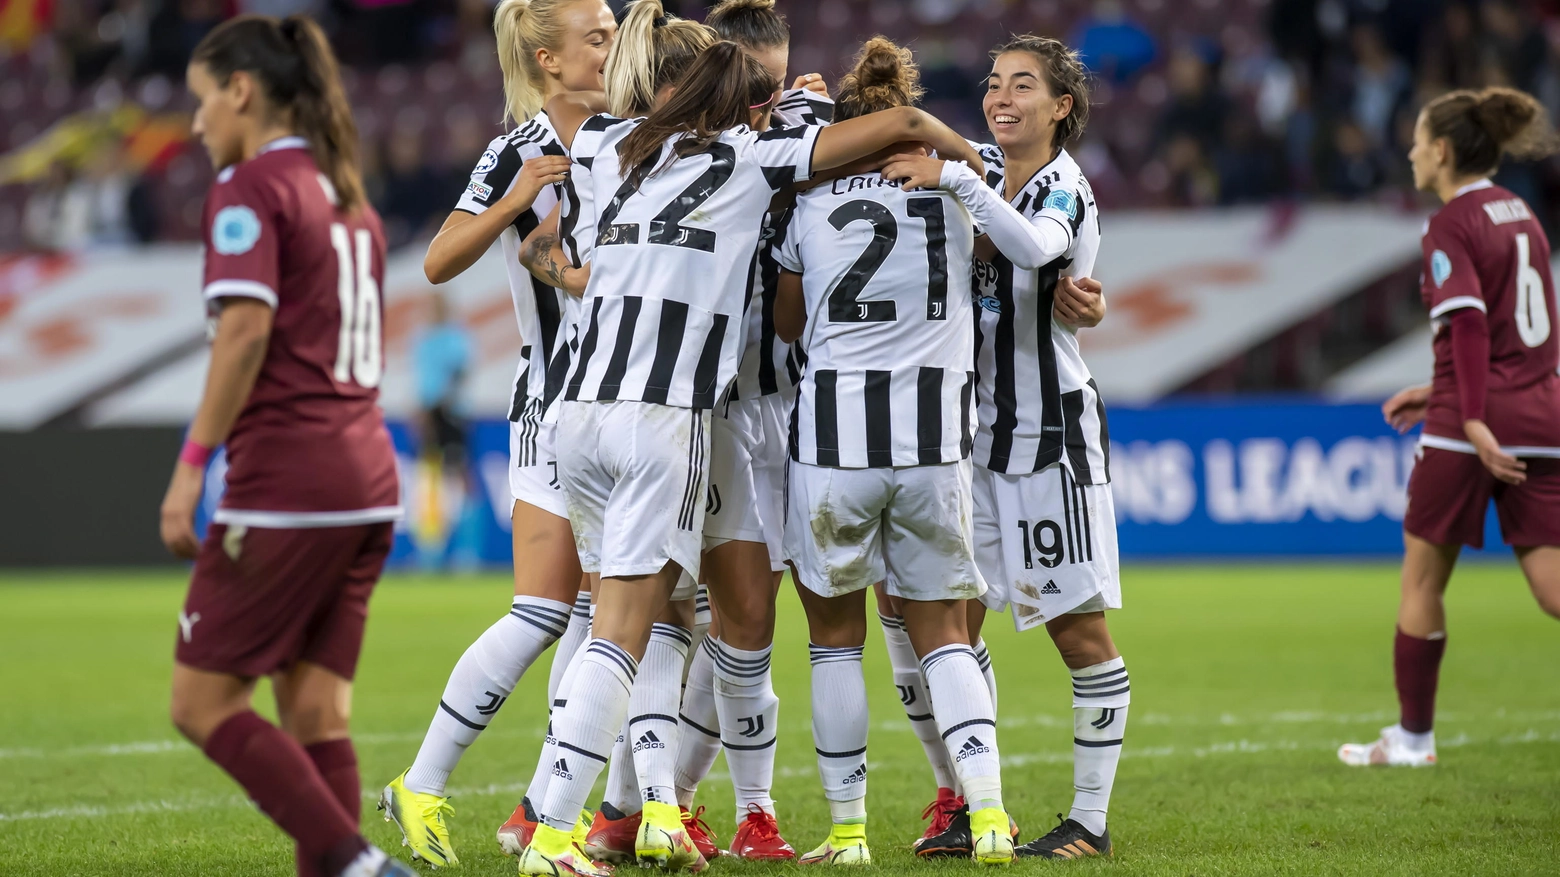 L'esultanza delle ragazze della Juventus